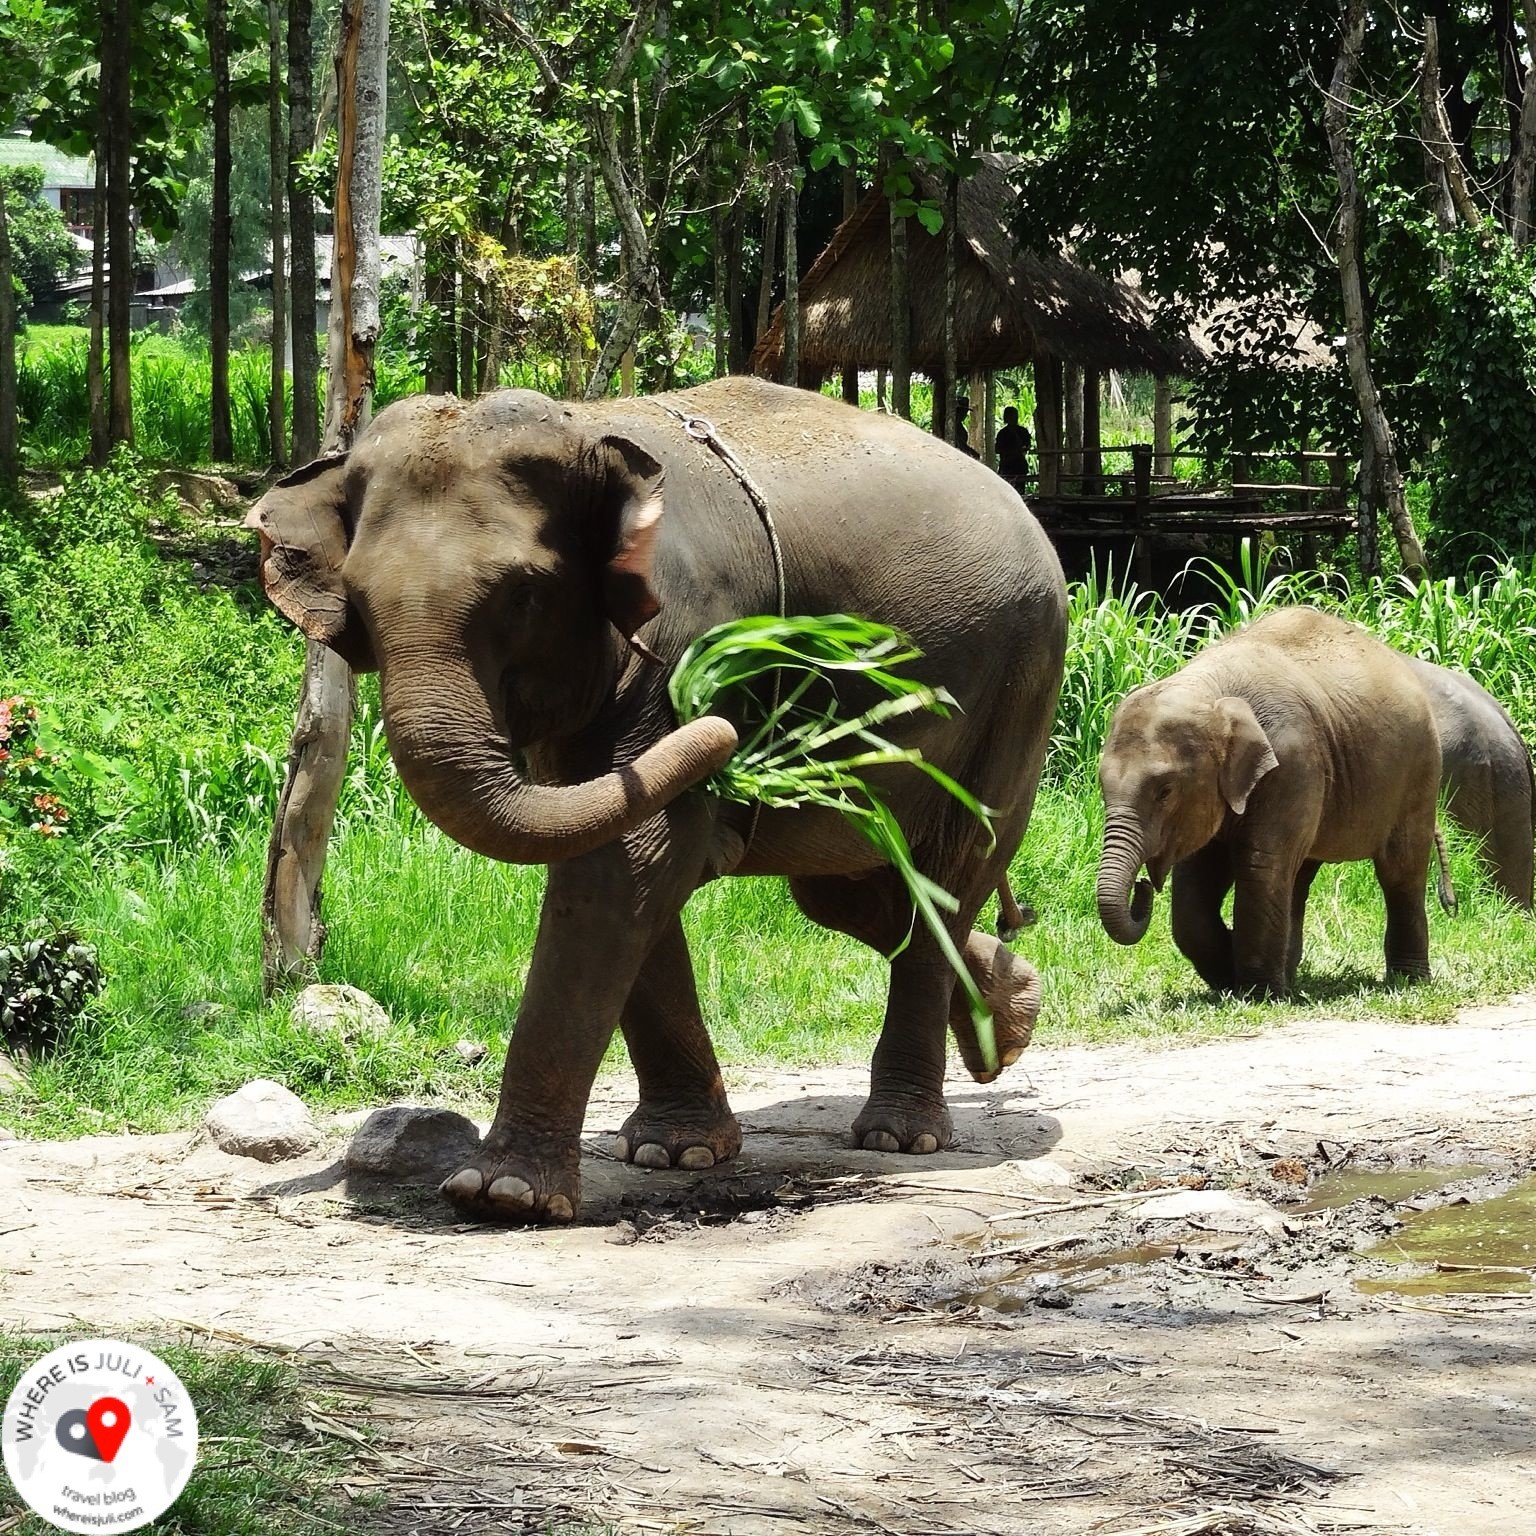 TAJLANDIA: Czy słonie mnie słyszą?